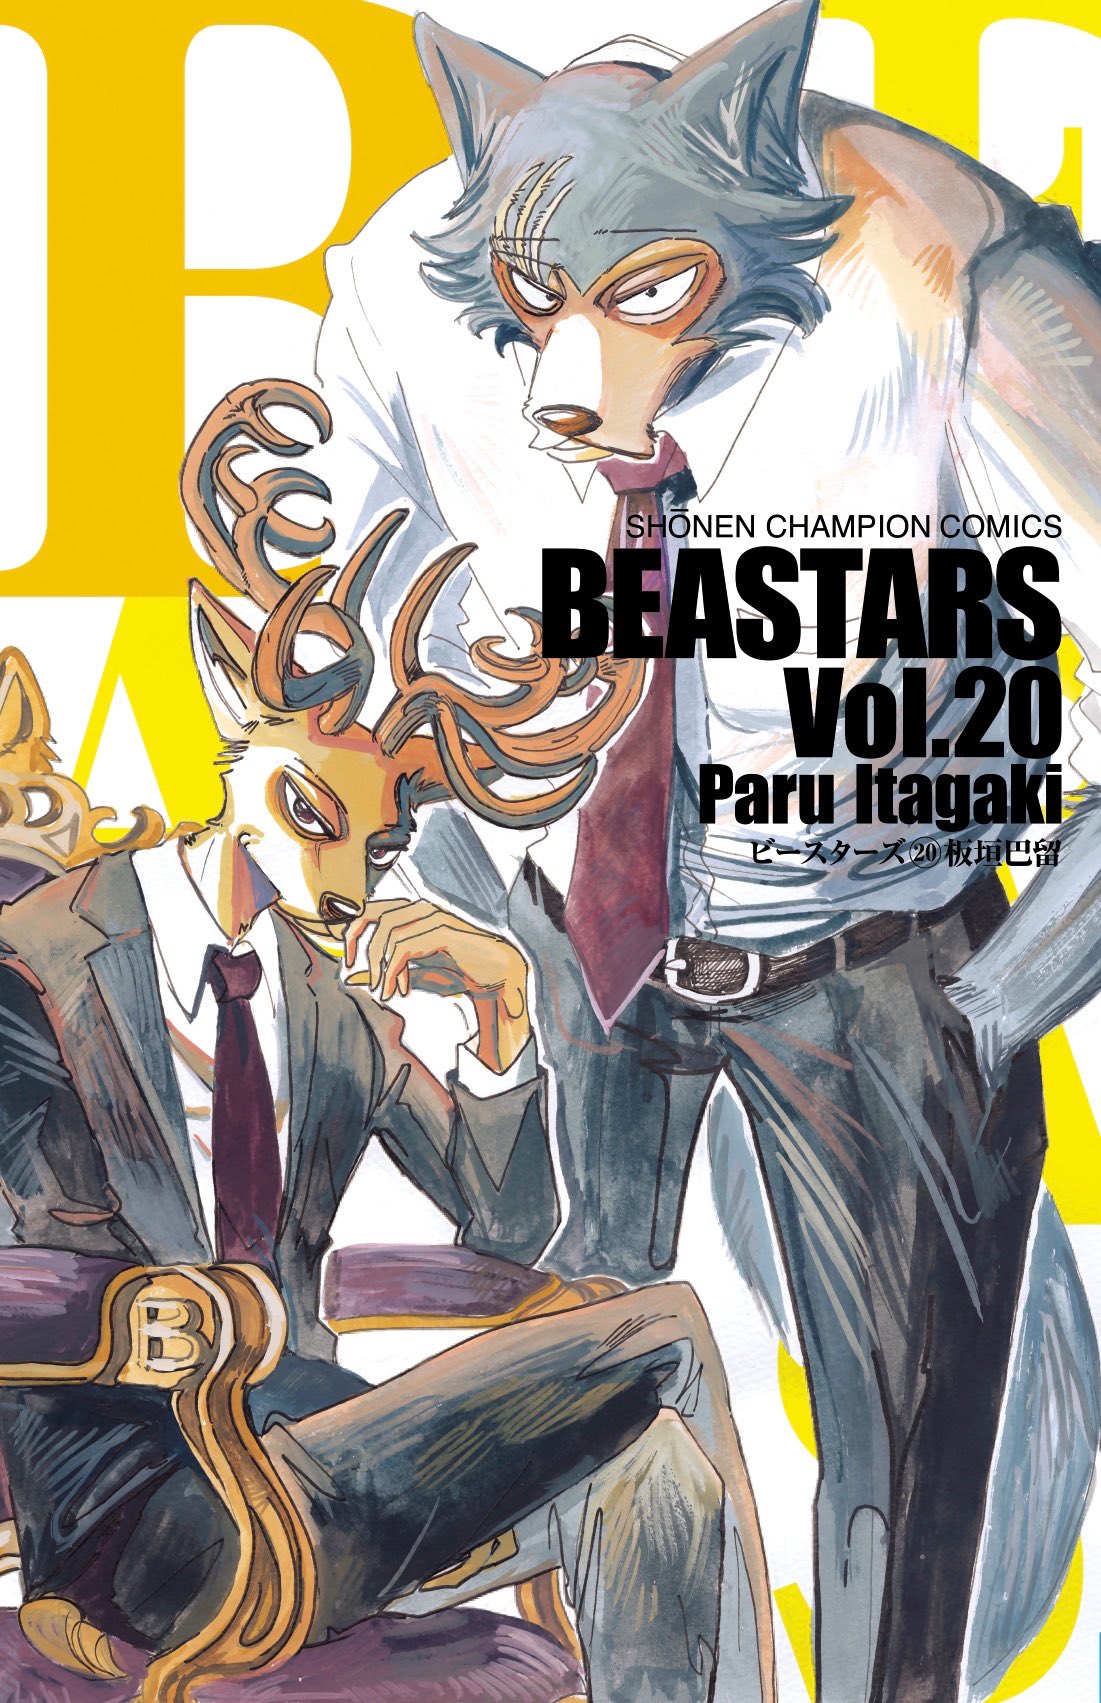 板垣巴留「BEASTARS」(ビースターズ) 第20巻 8月6日発売!